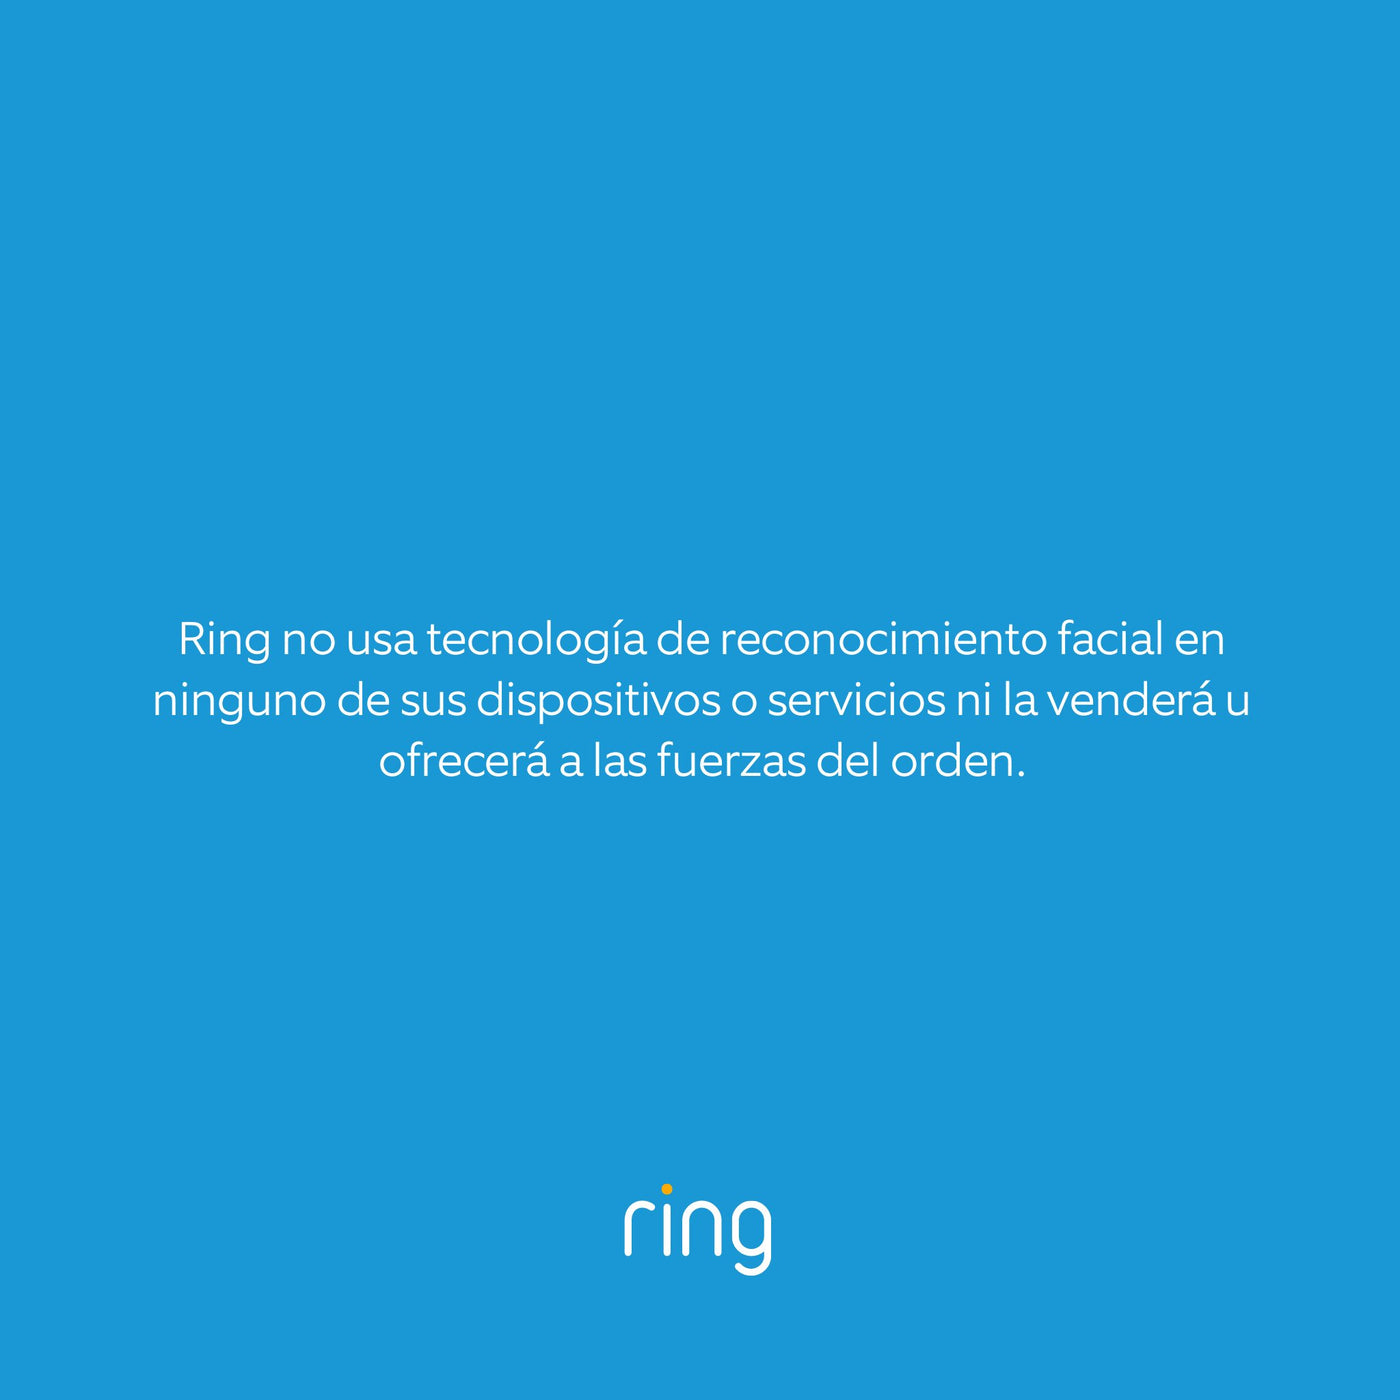 El enfoque de Ring acerca de la tecnología de reconocimiento facial